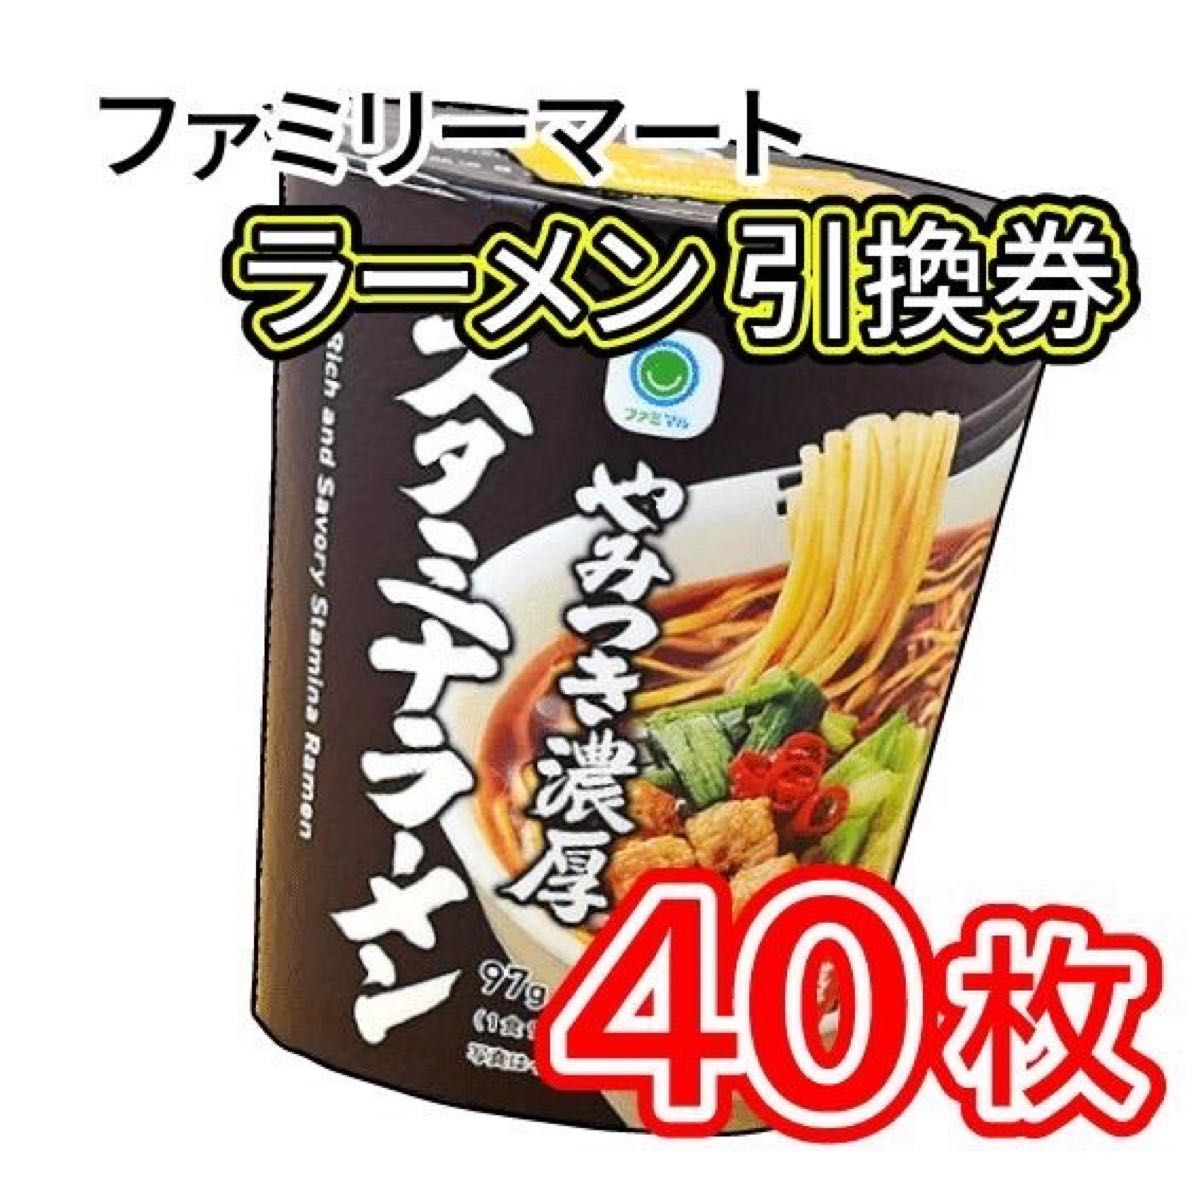 011/ ファミリーマート ラーメン 引換券 40枚